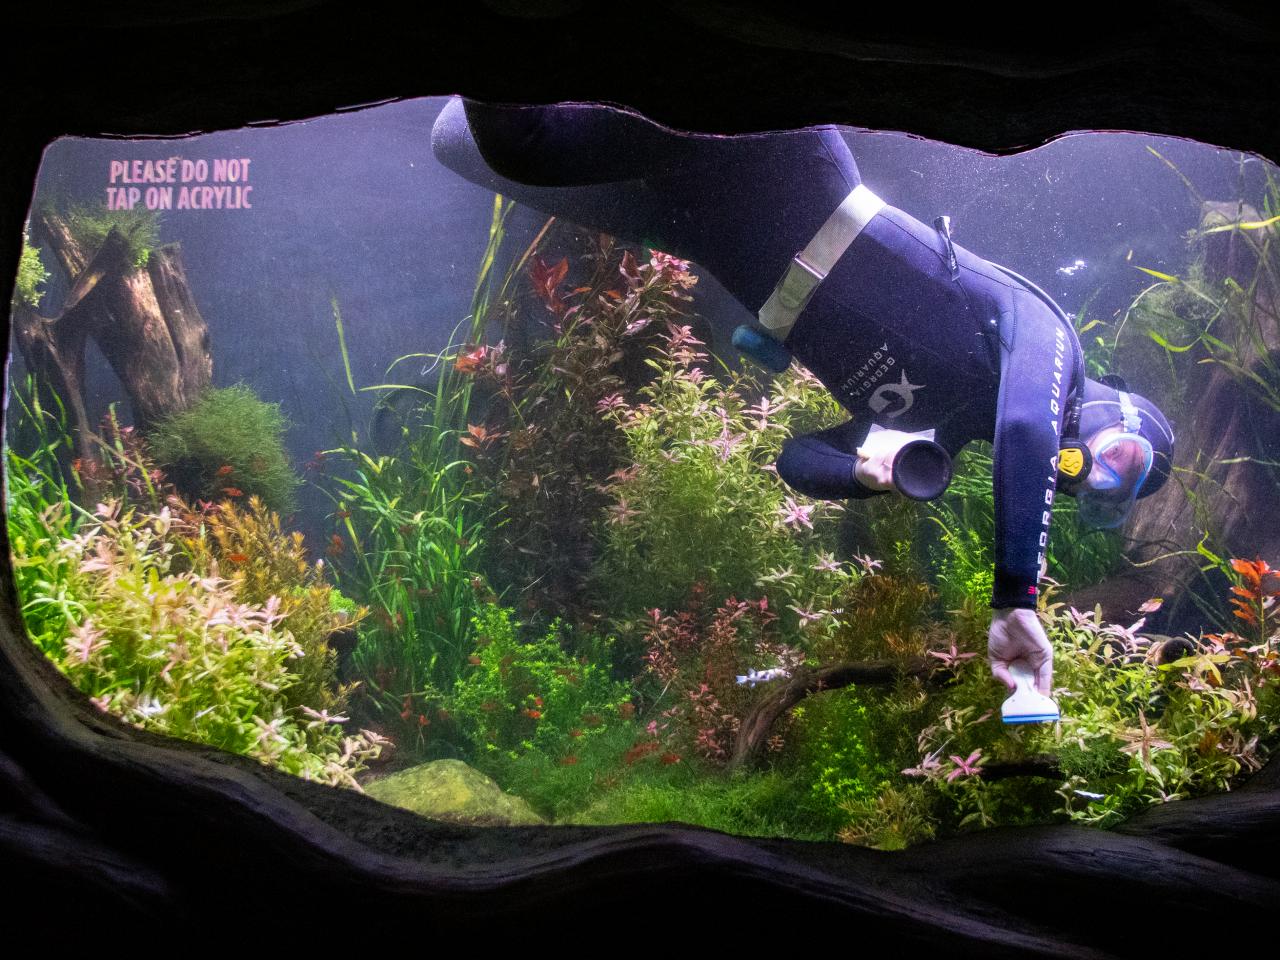 Photos of Divers Cleaning Aquarium Tanks, Nature and Wildlife